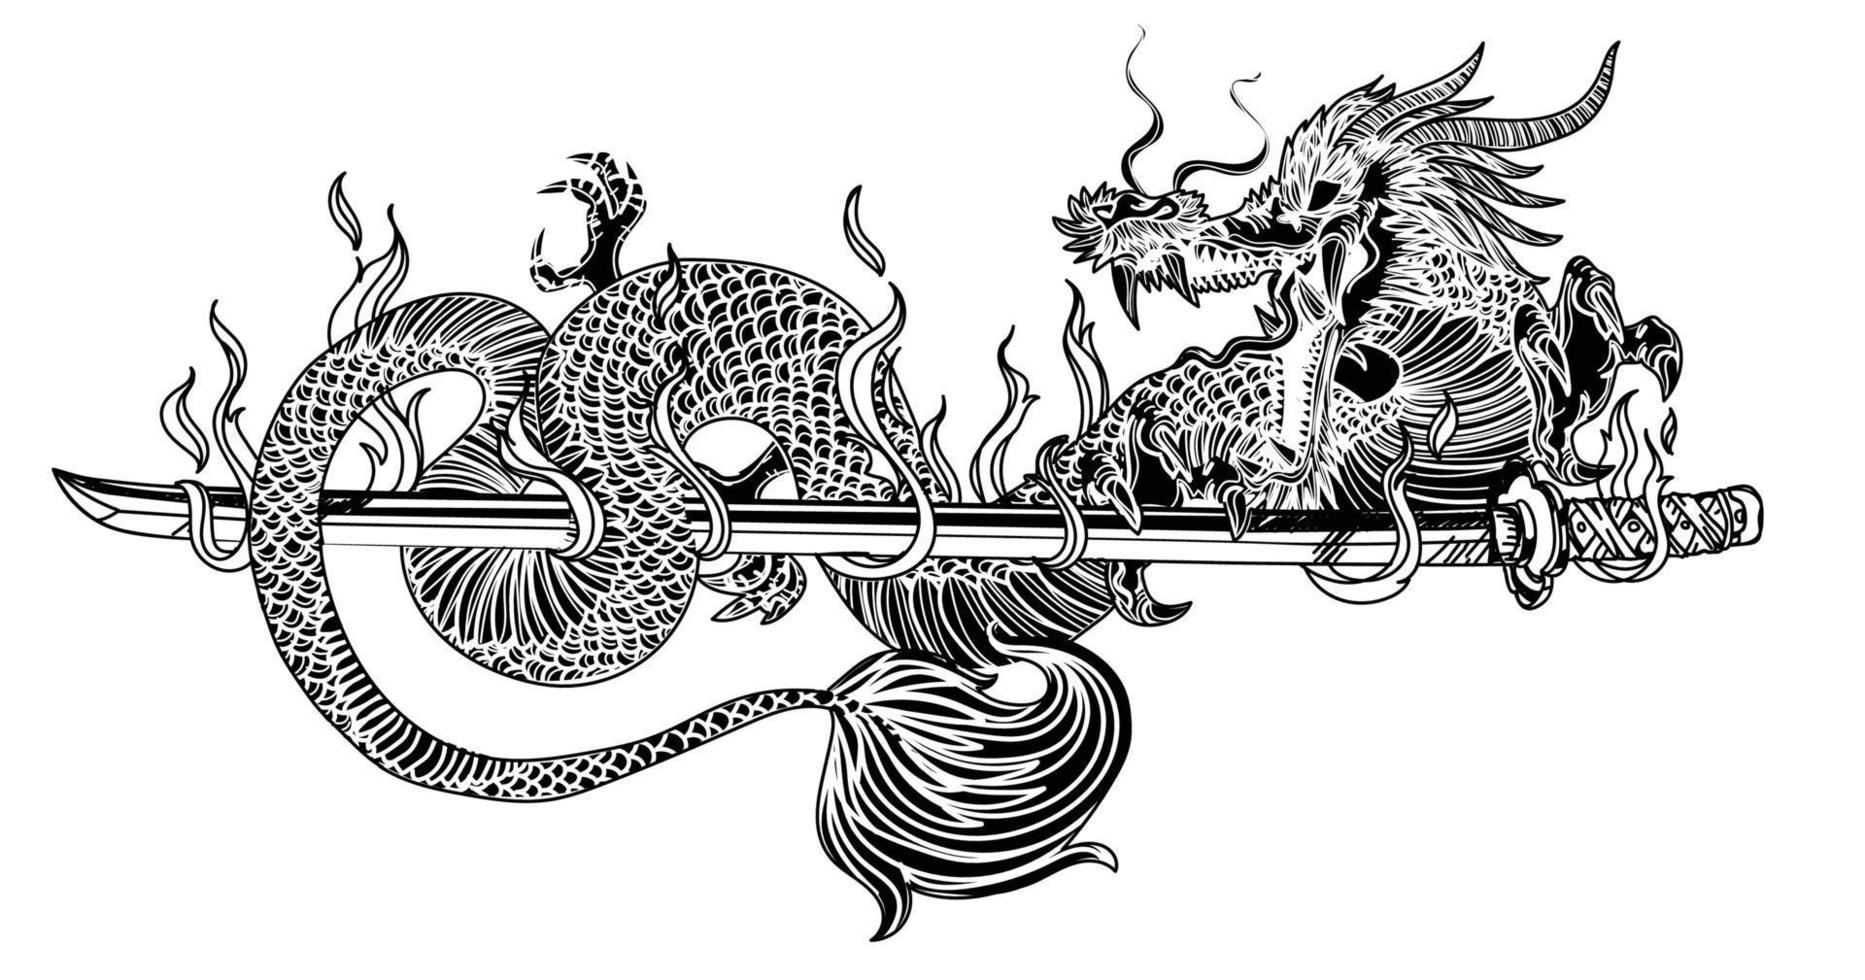 art de tatouage dargon et épée japonaise dessin à la main croquis noir et blanc vecteur